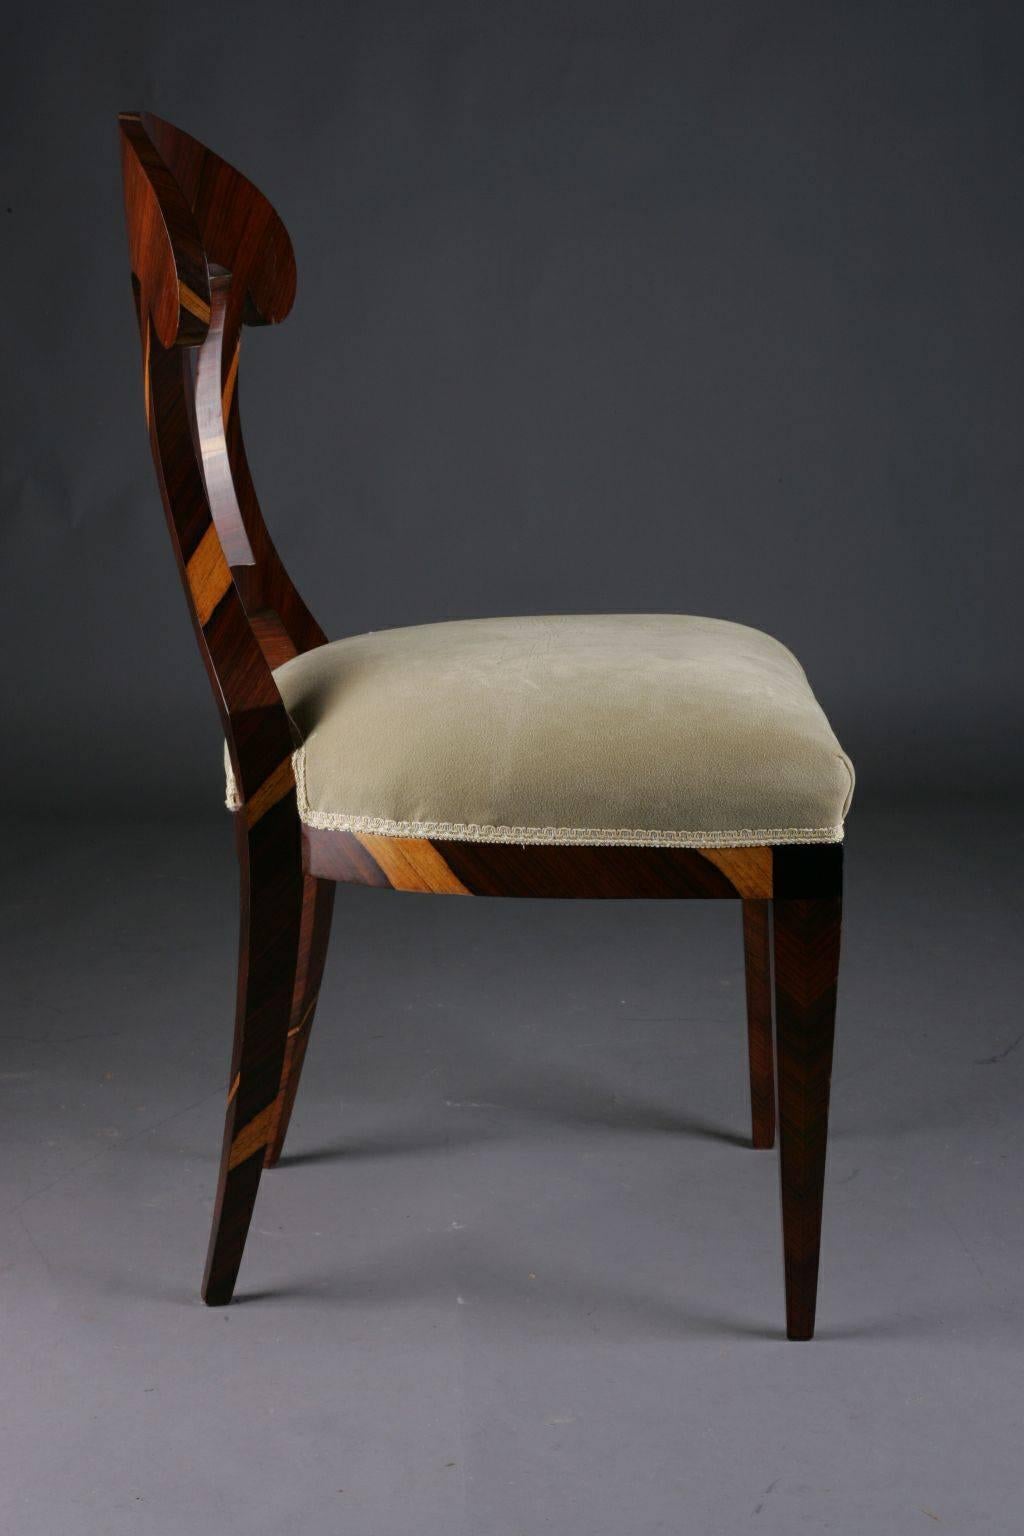 Tulipwood 20th Century Vienna Biedermeier Style Chair after Josef Danhauer